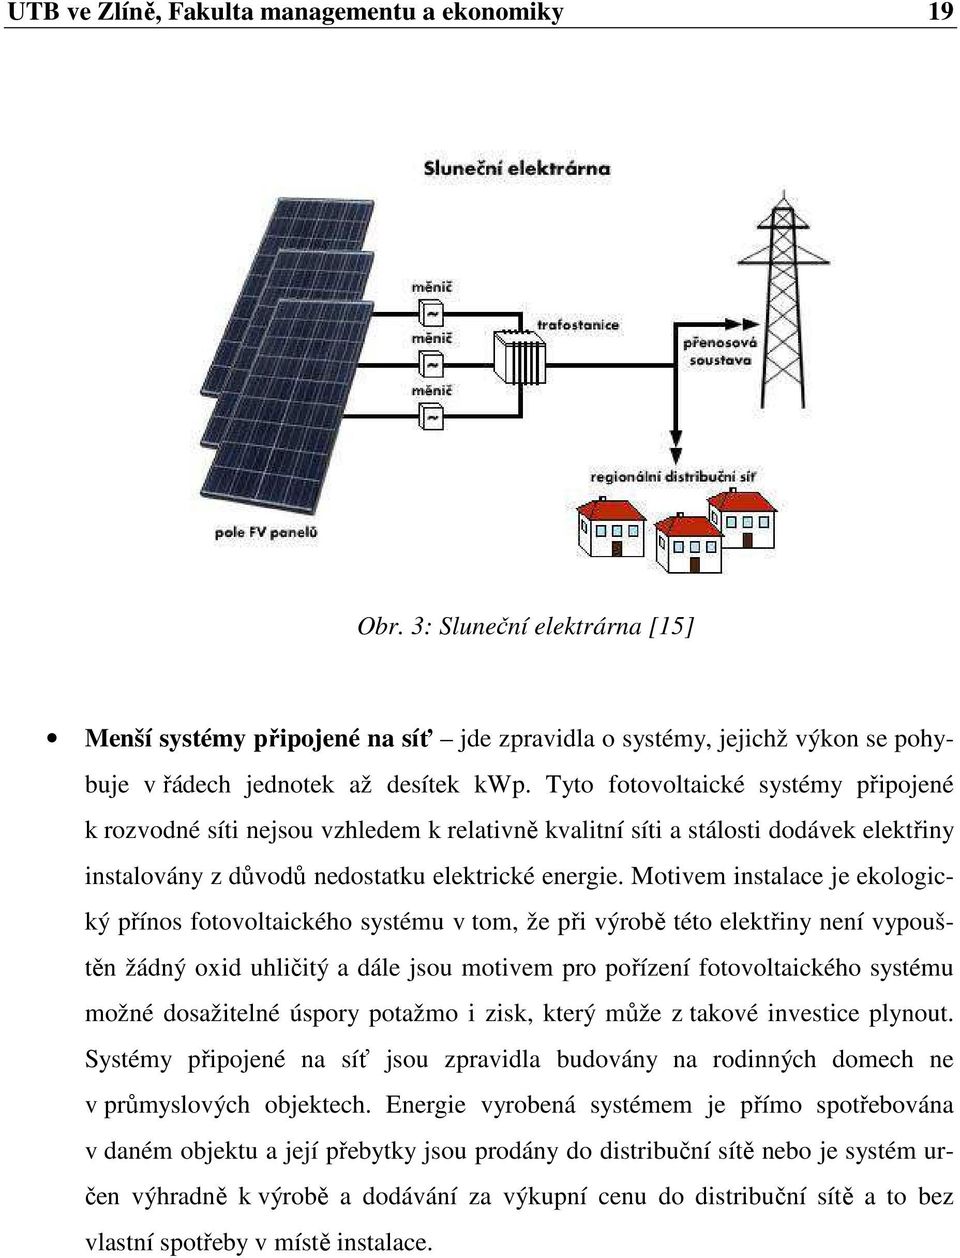 Motivem instalace je ekologický přínos fotovoltaického systému v tom, že při výrobě této elektřiny není vypouštěn žádný oxid uhličitý a dále jsou motivem pro pořízení fotovoltaického systému možné